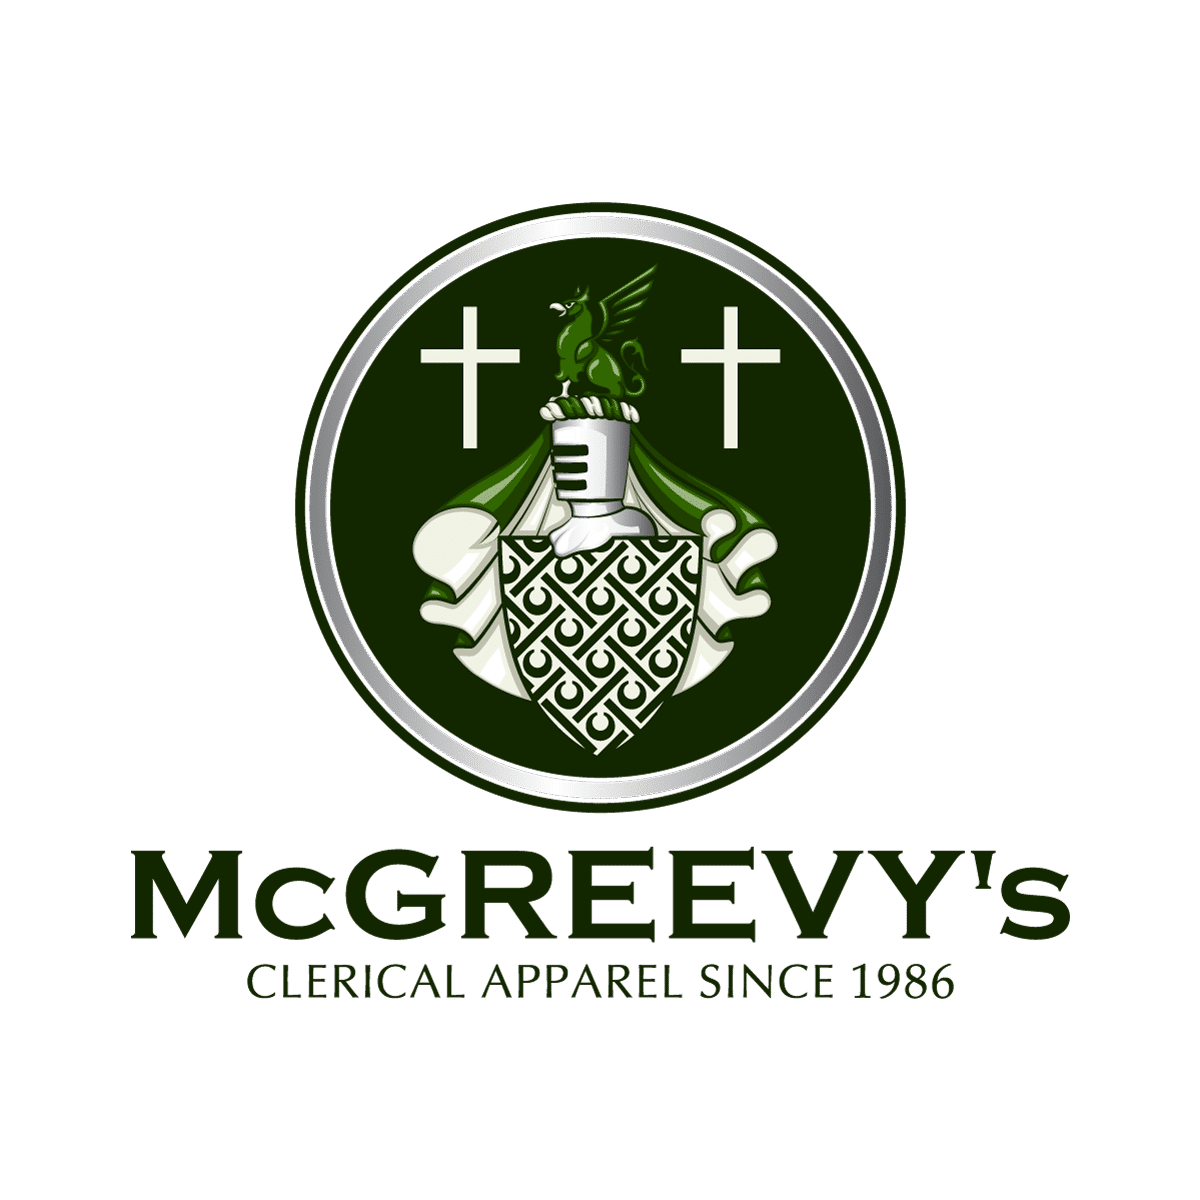 – McGreevy's